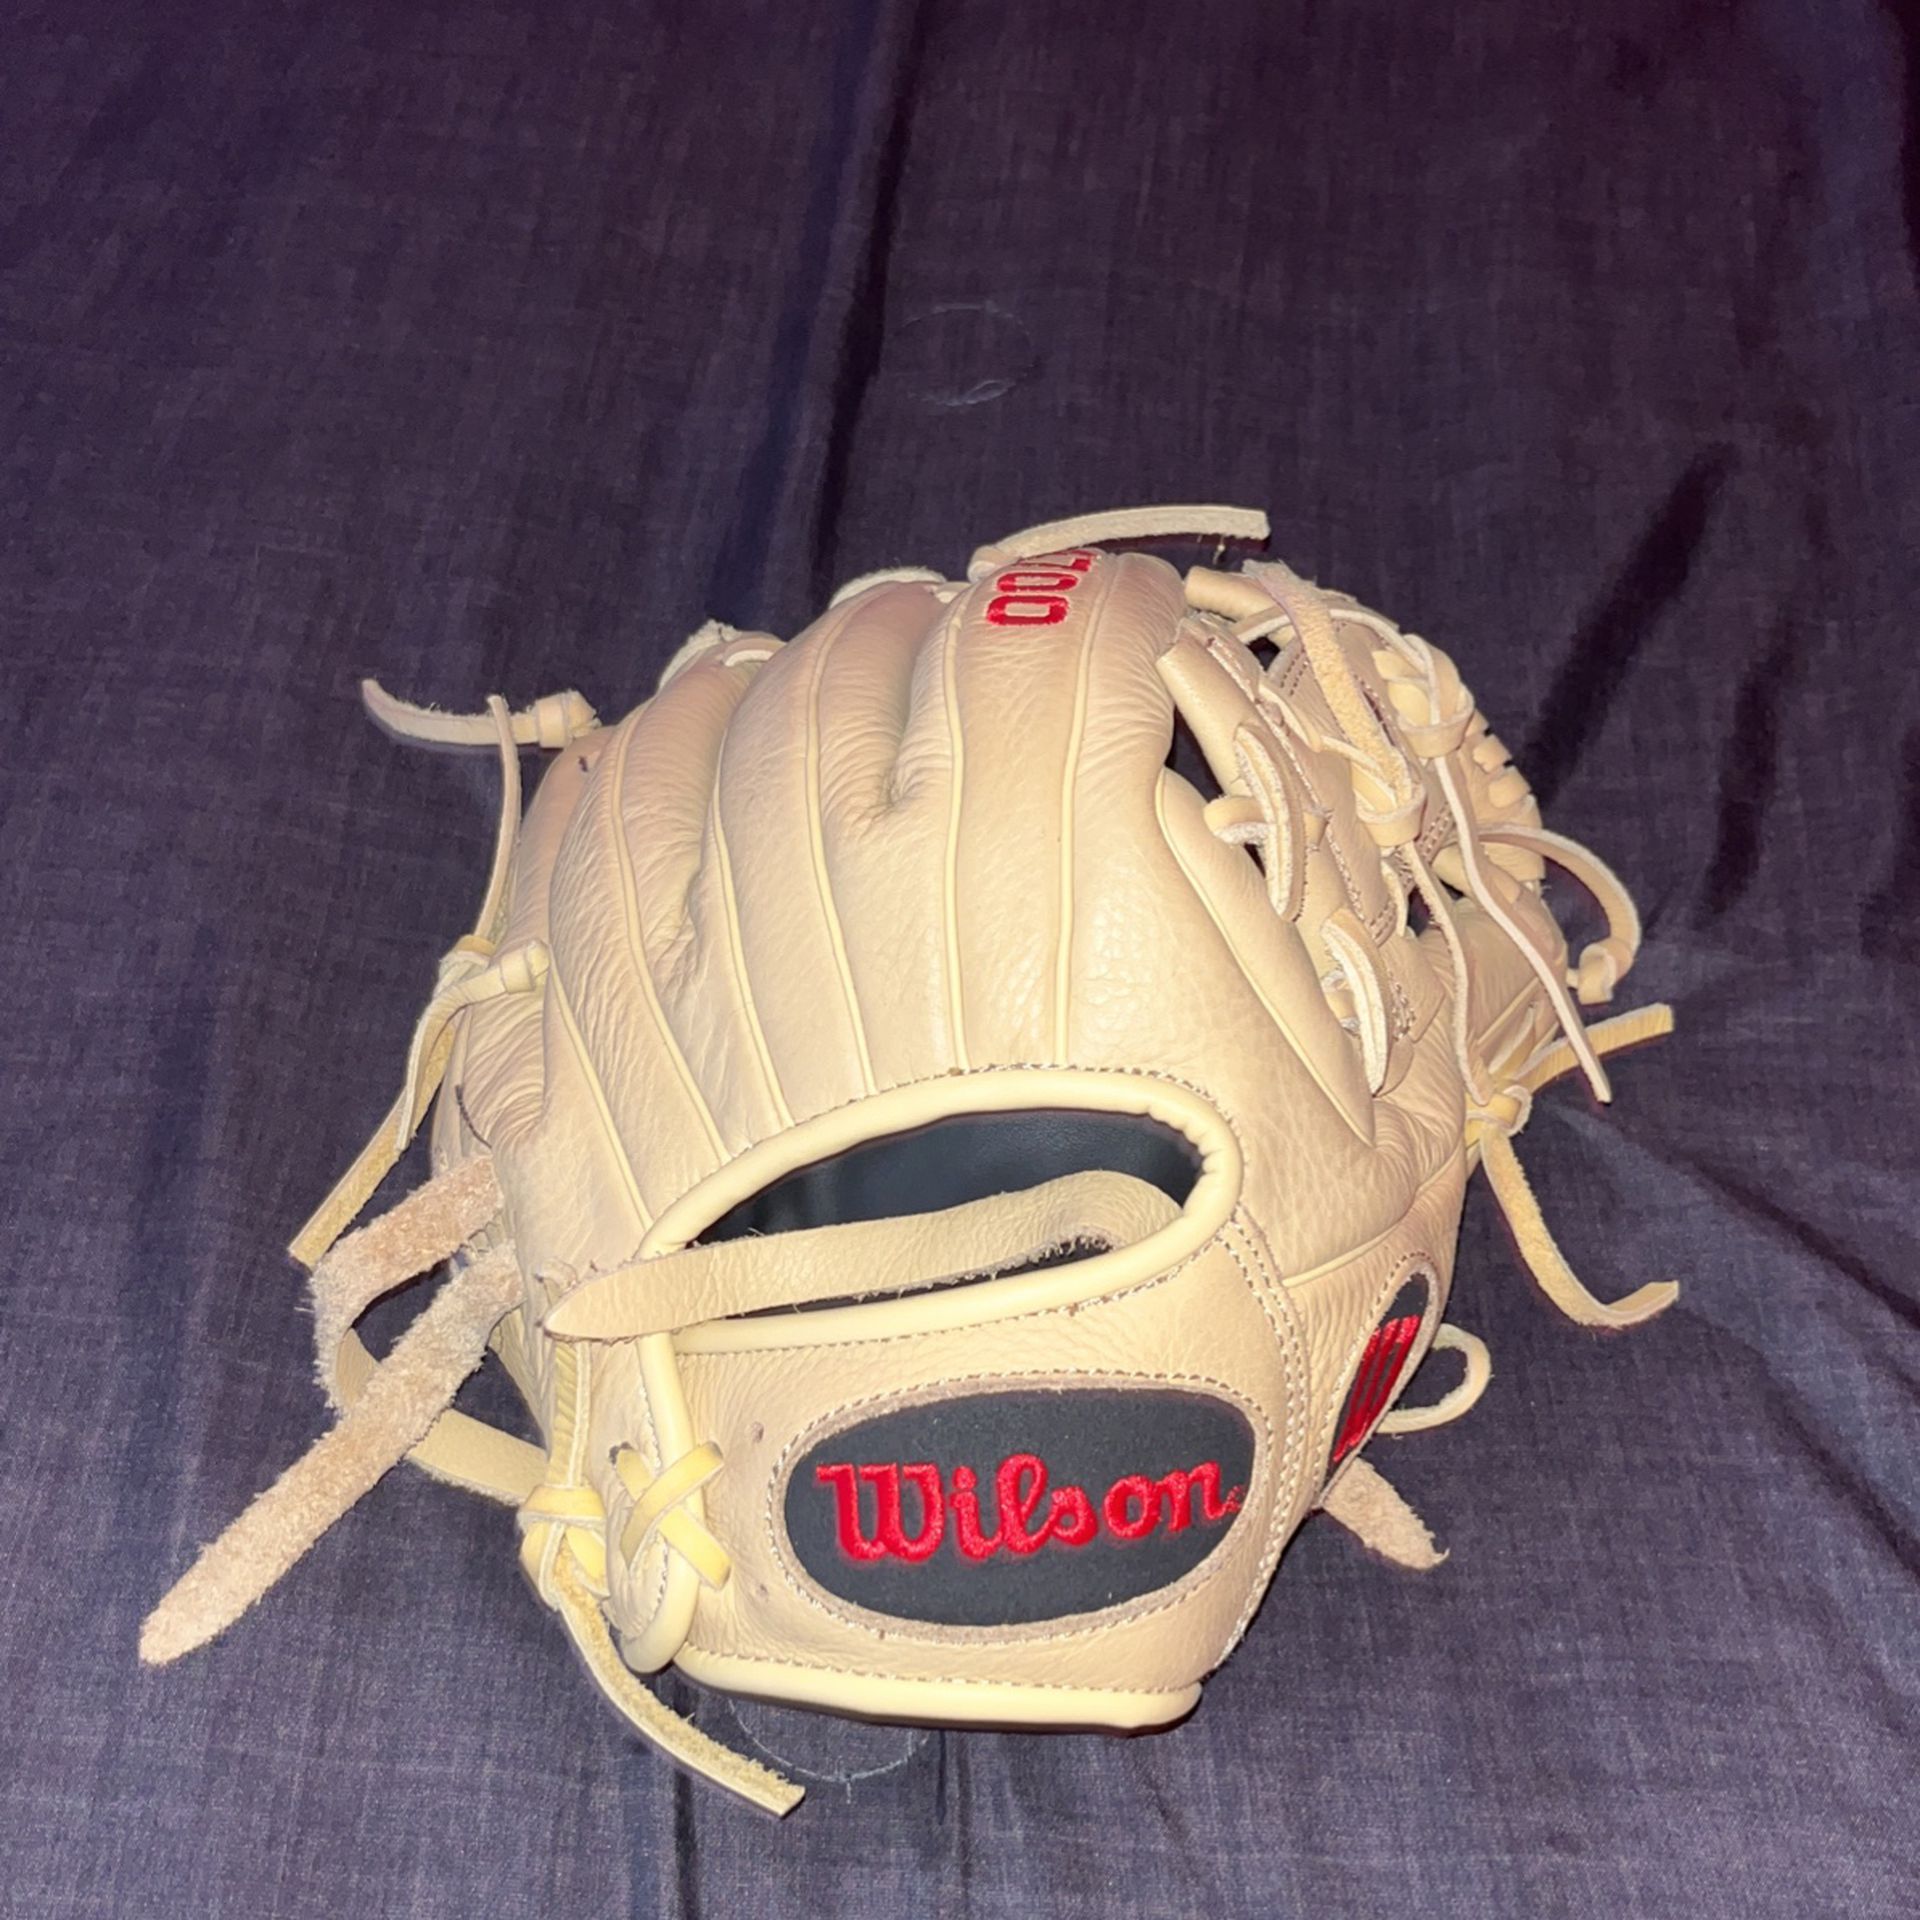 A700 Baseball Glove Youth Size 11 1/2